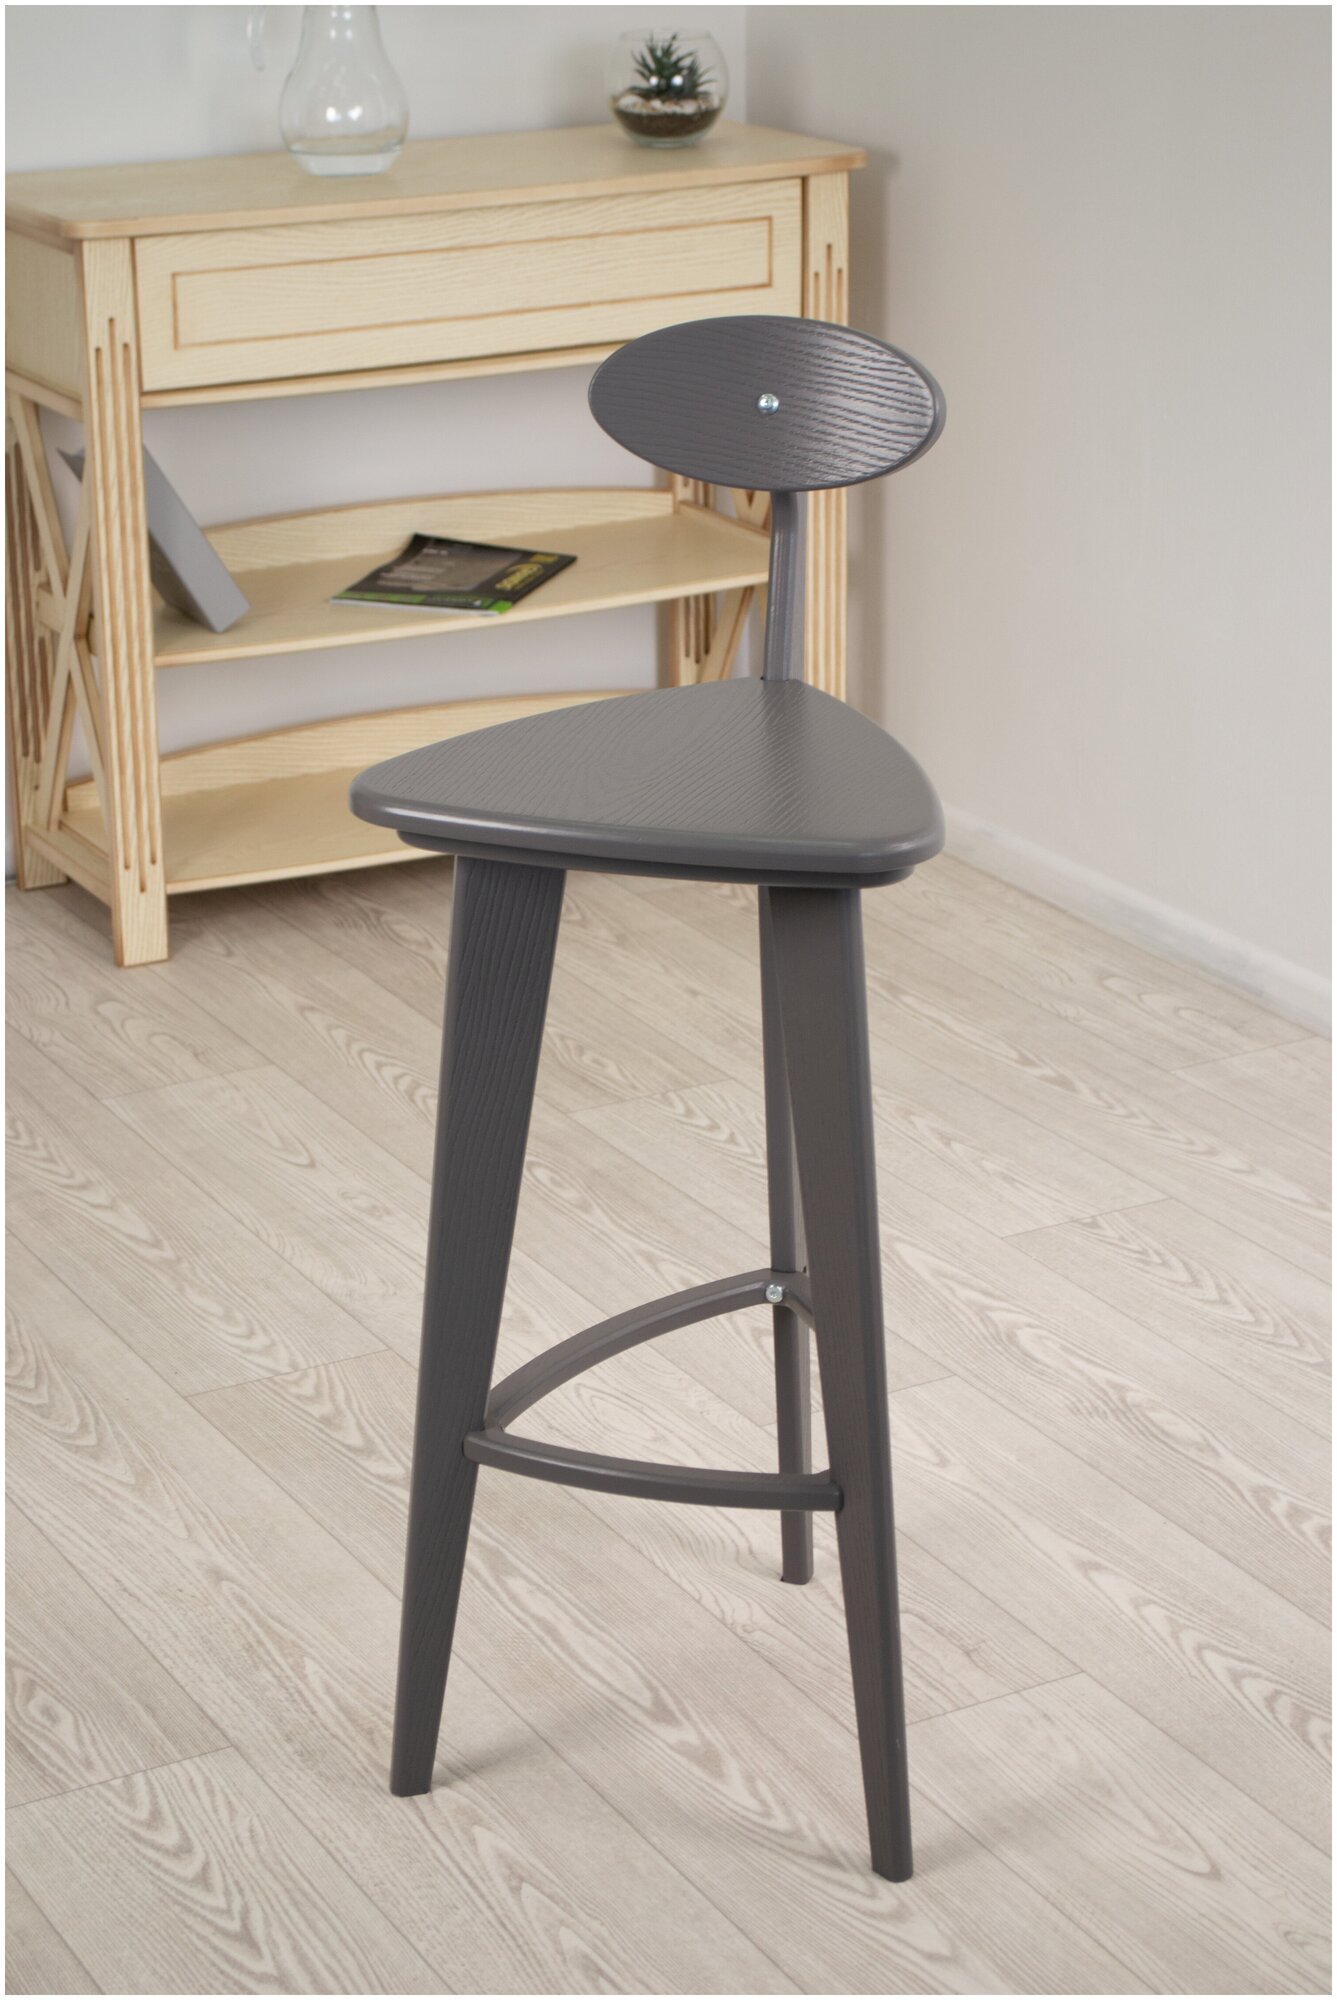 Барный деревянный стул Glider с 3 прямыми ножками для кухни и столовой, для дома и дачи, цвет серый ясень